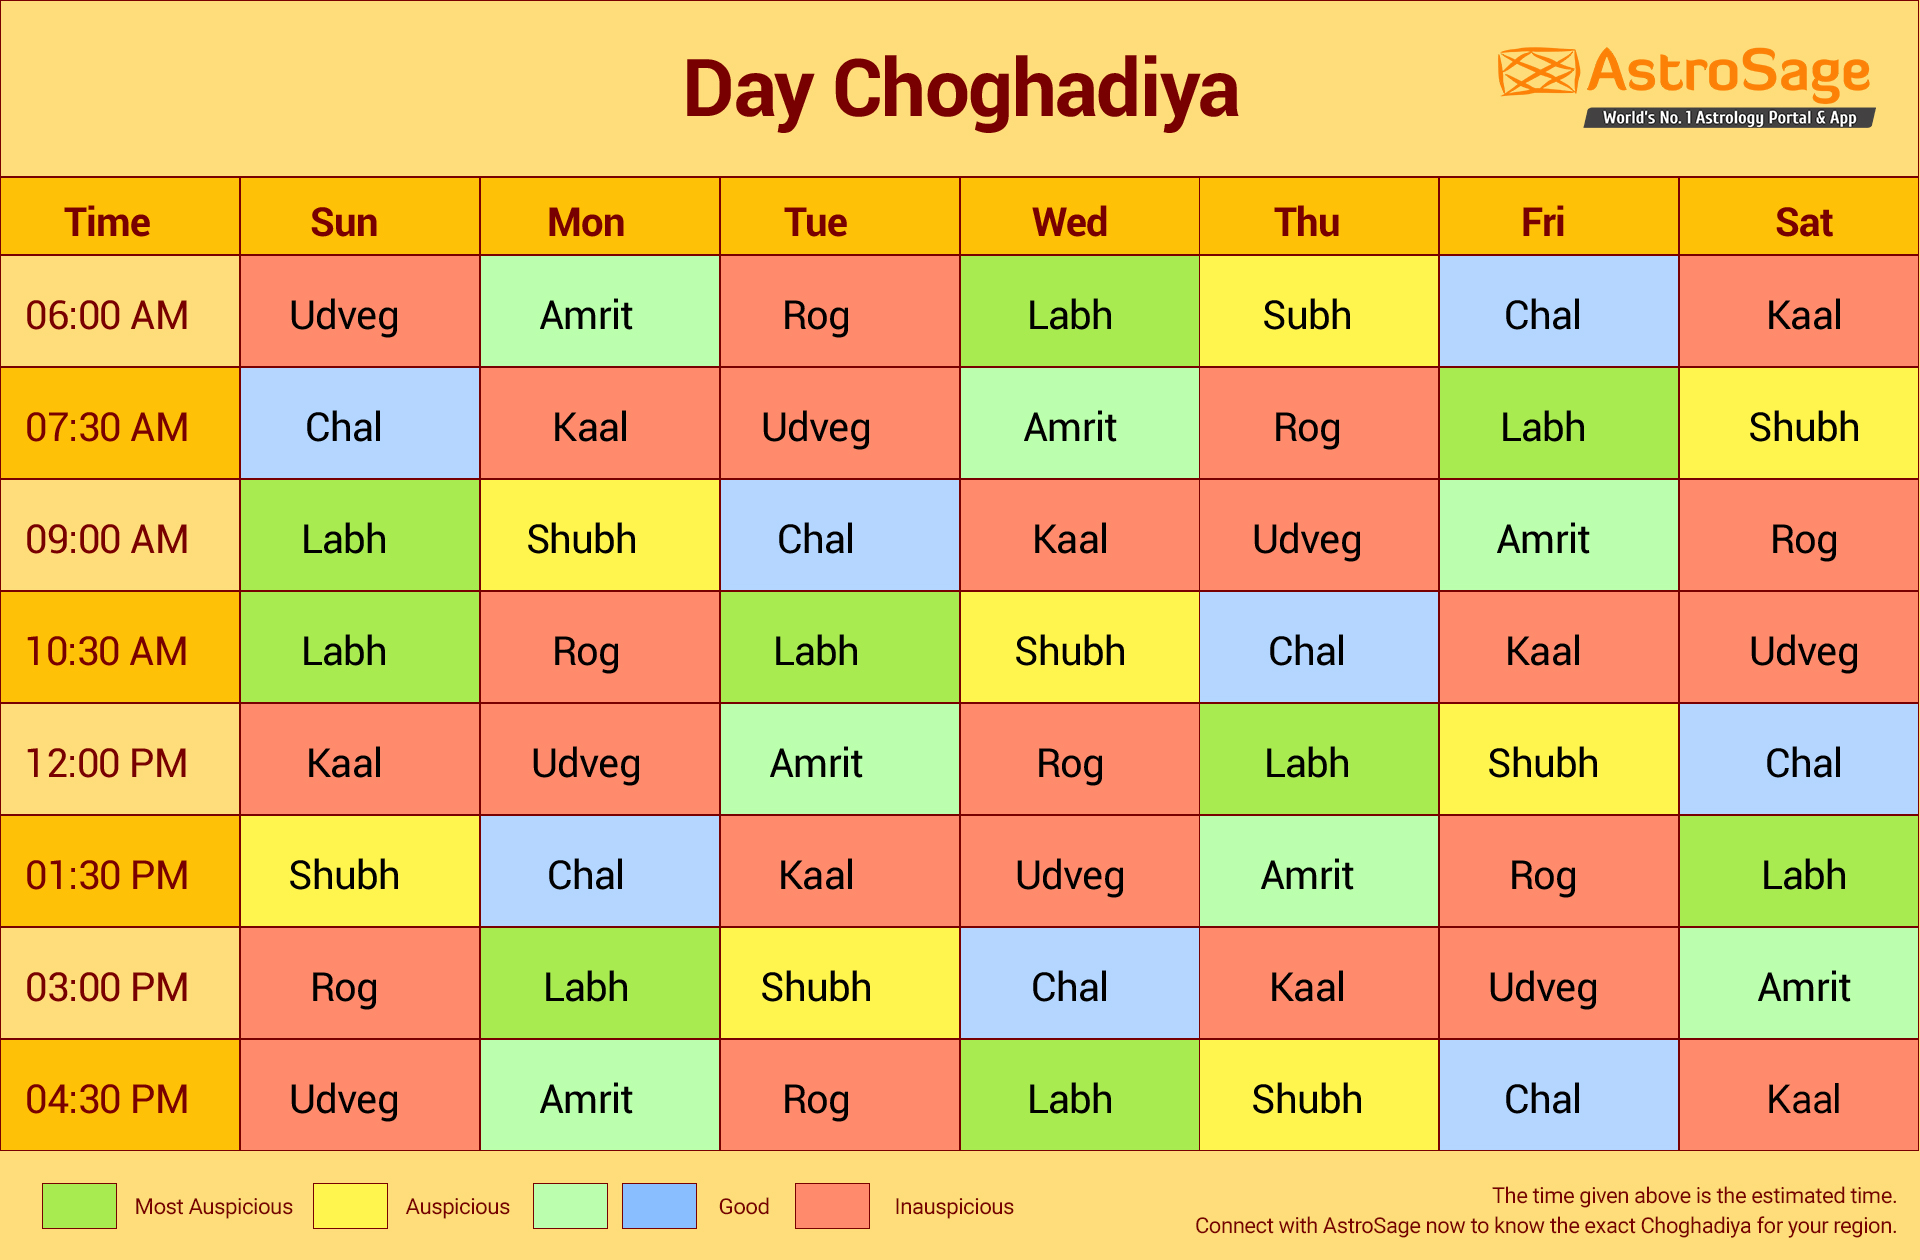 day choghadiya for all weekdays